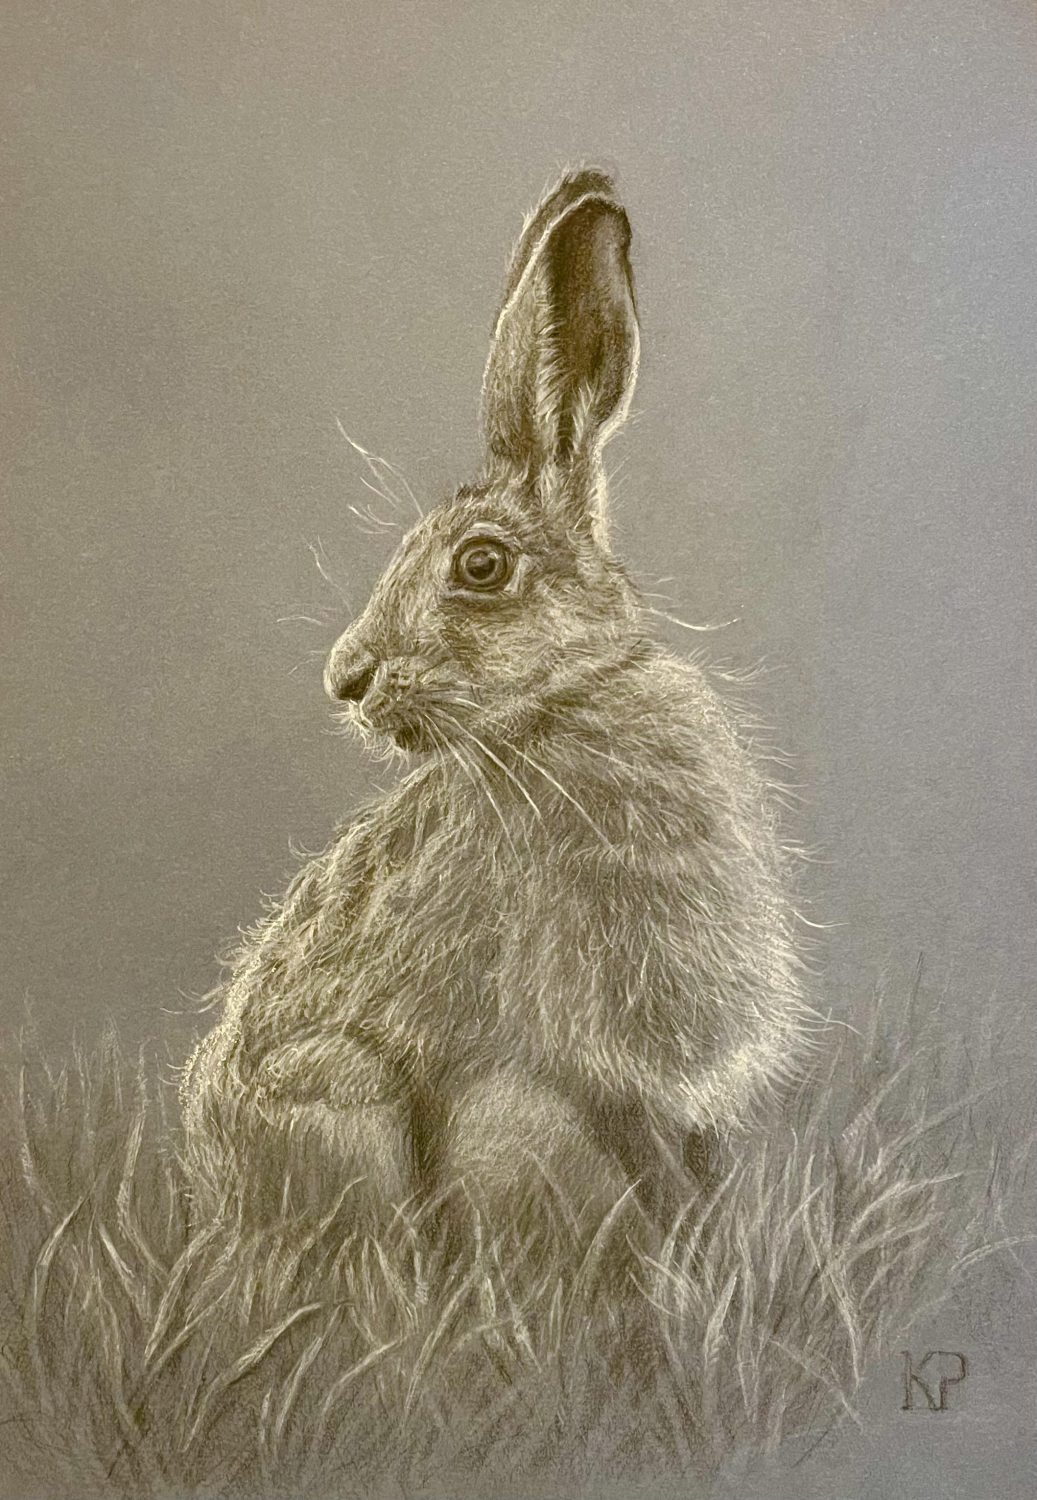 Startled Hare by Kateryna Penchkovska